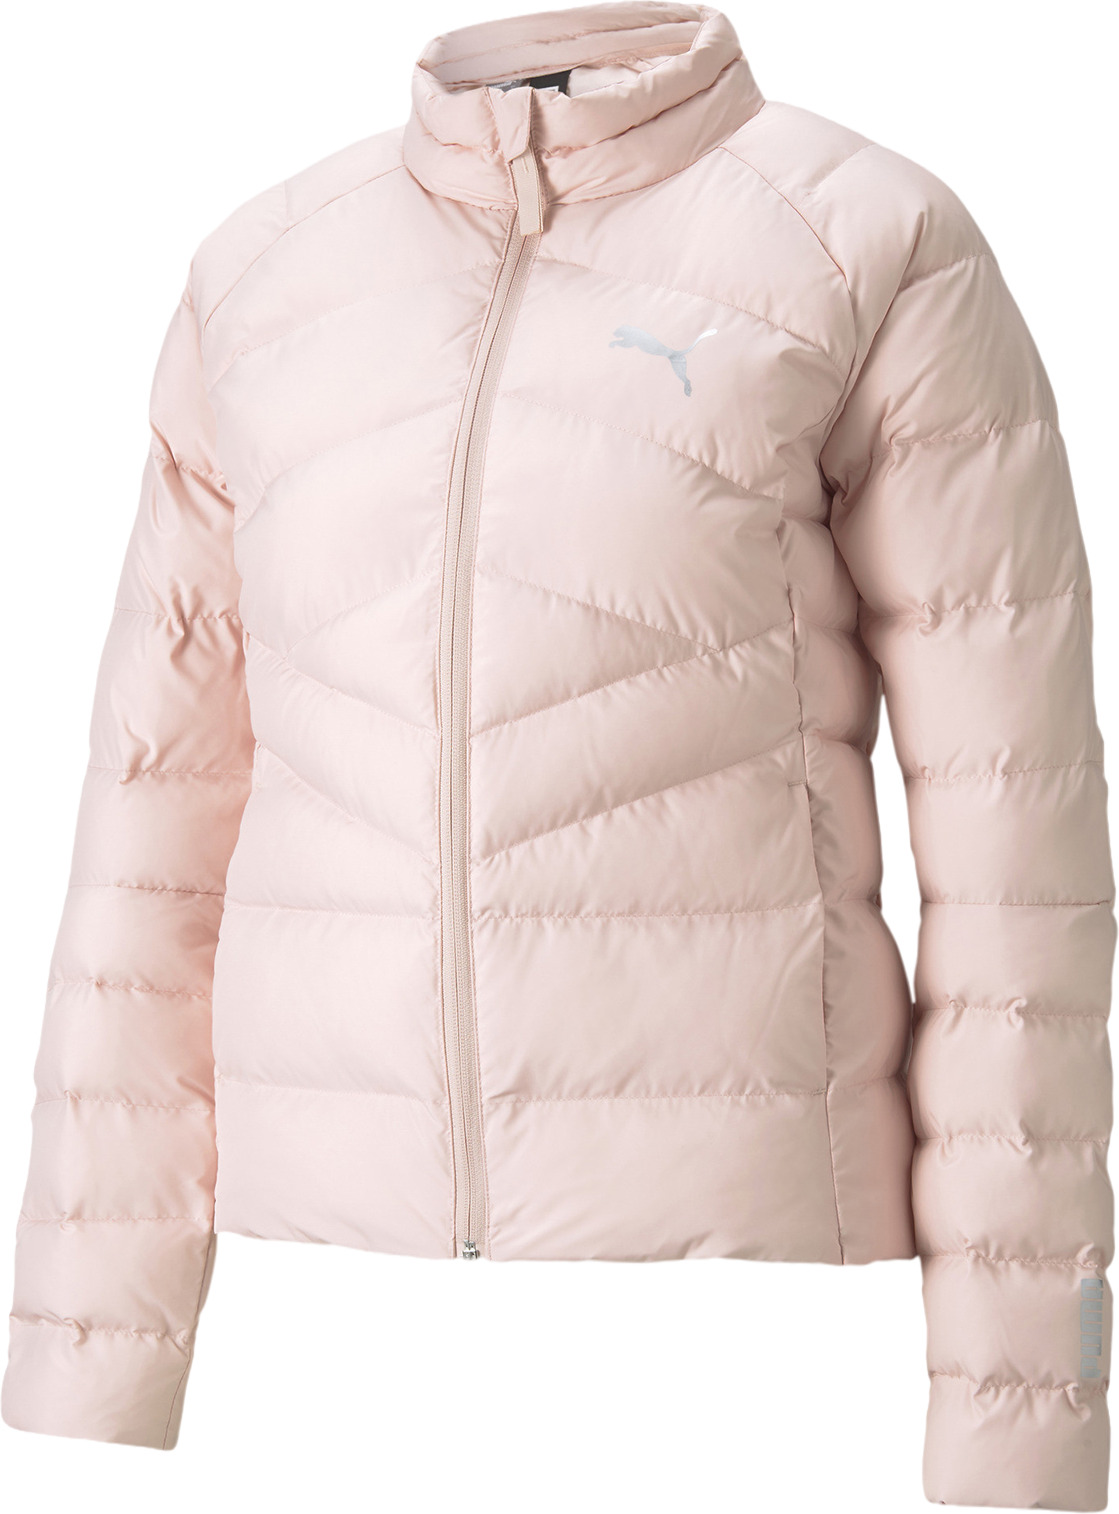 Куртка Puma Warmcell Lightweight Jacket (58770436) купить за 5455 руб. в  интернет-магазине